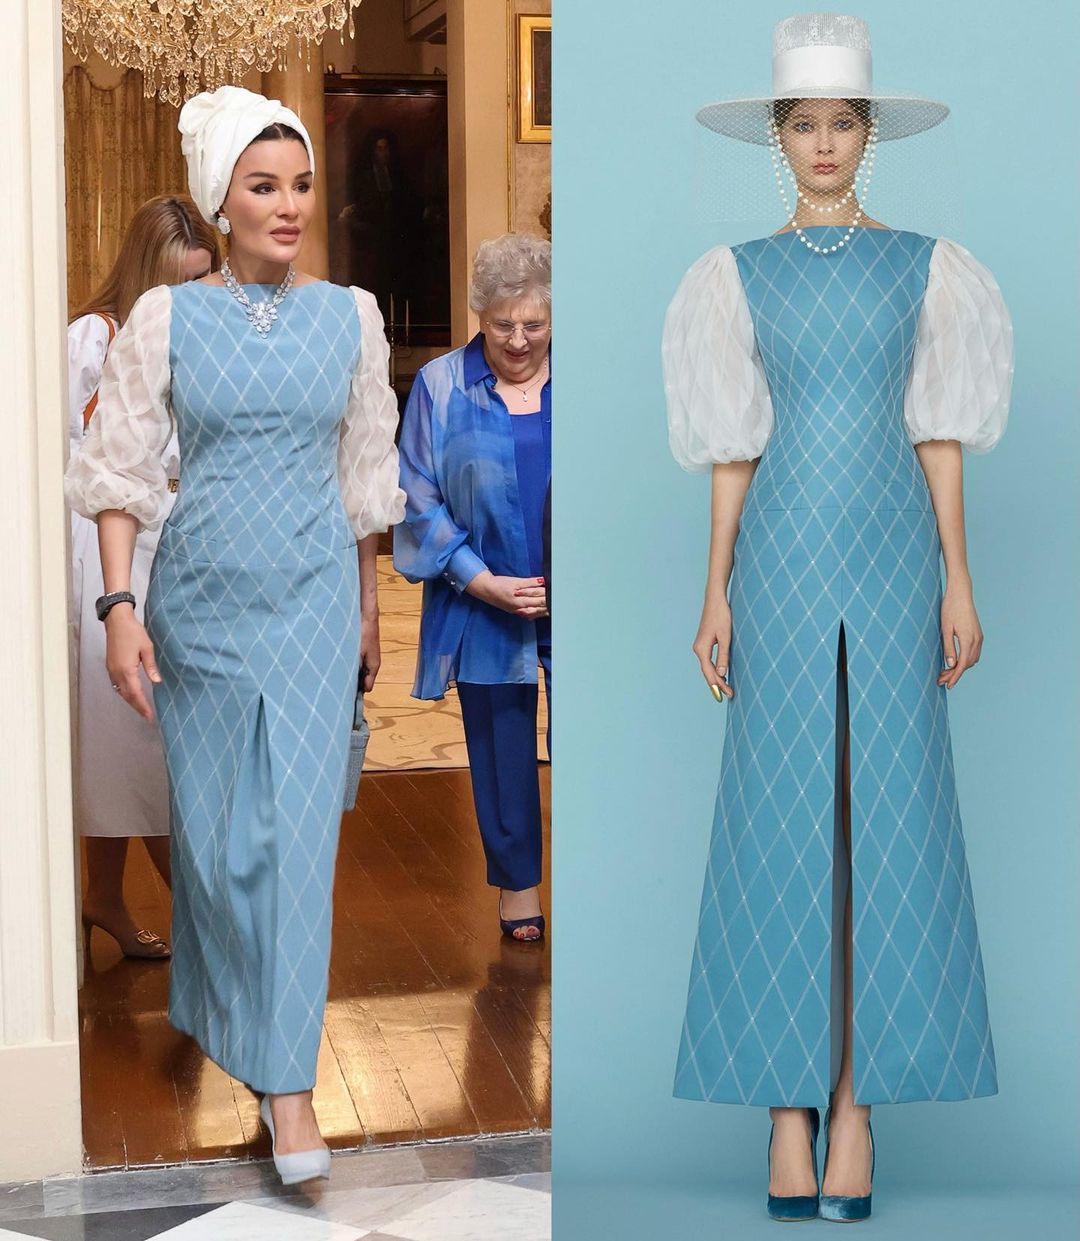 ظهور الشيخة موزا وهي ترتدي فستانا باللون الأزرق والأبيض في مالطا